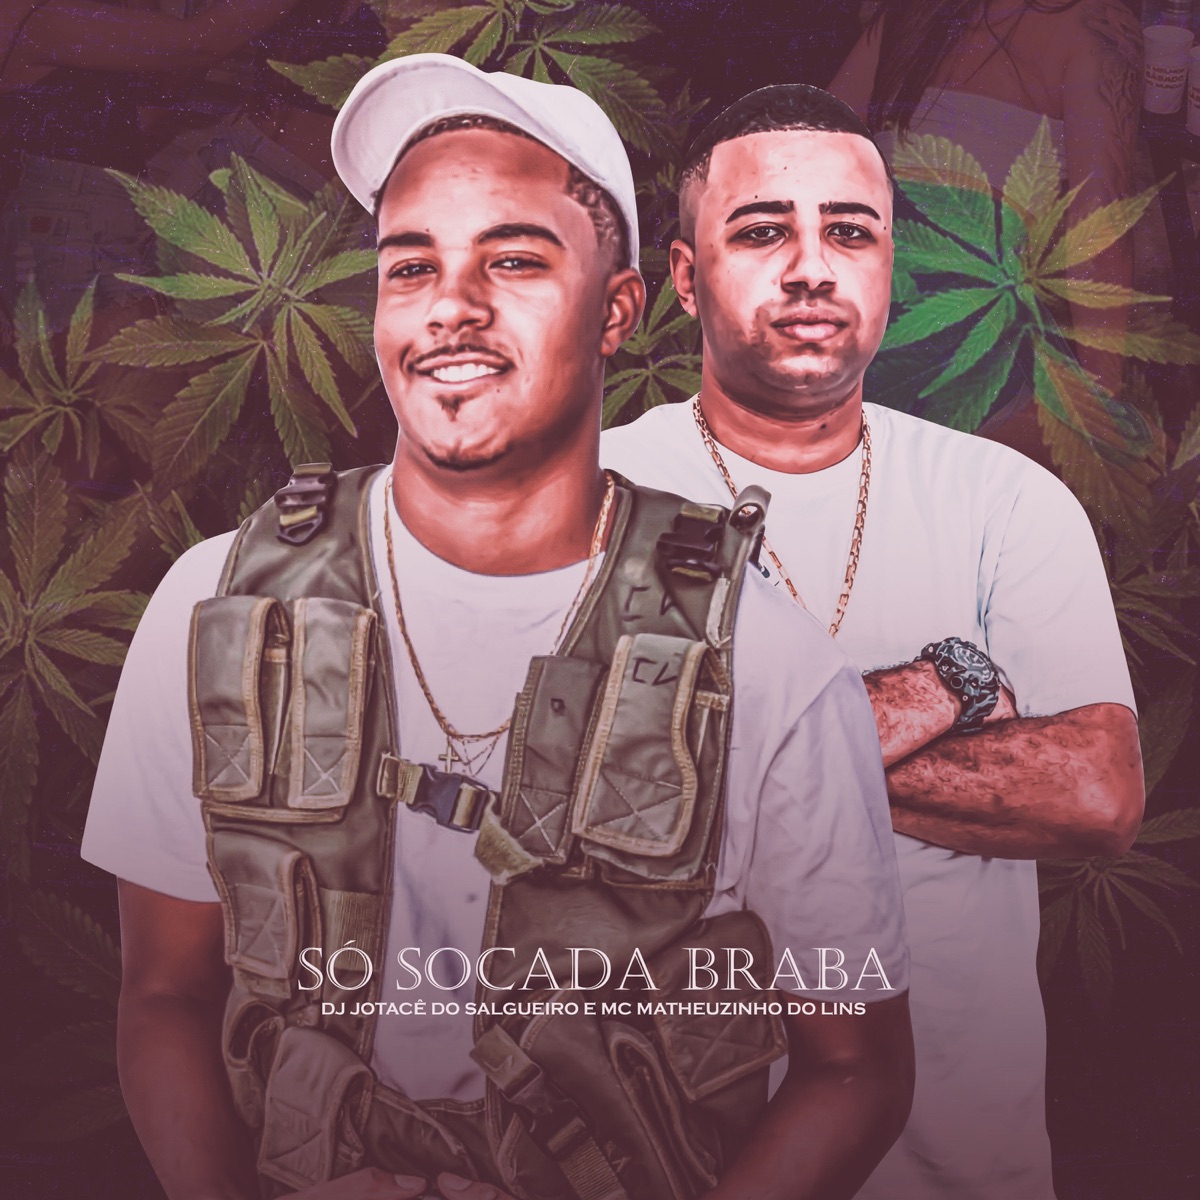 Soca Fofo da Quebrada - Single - Album by DJ Helinho & MC Gauchinho - Apple  Music